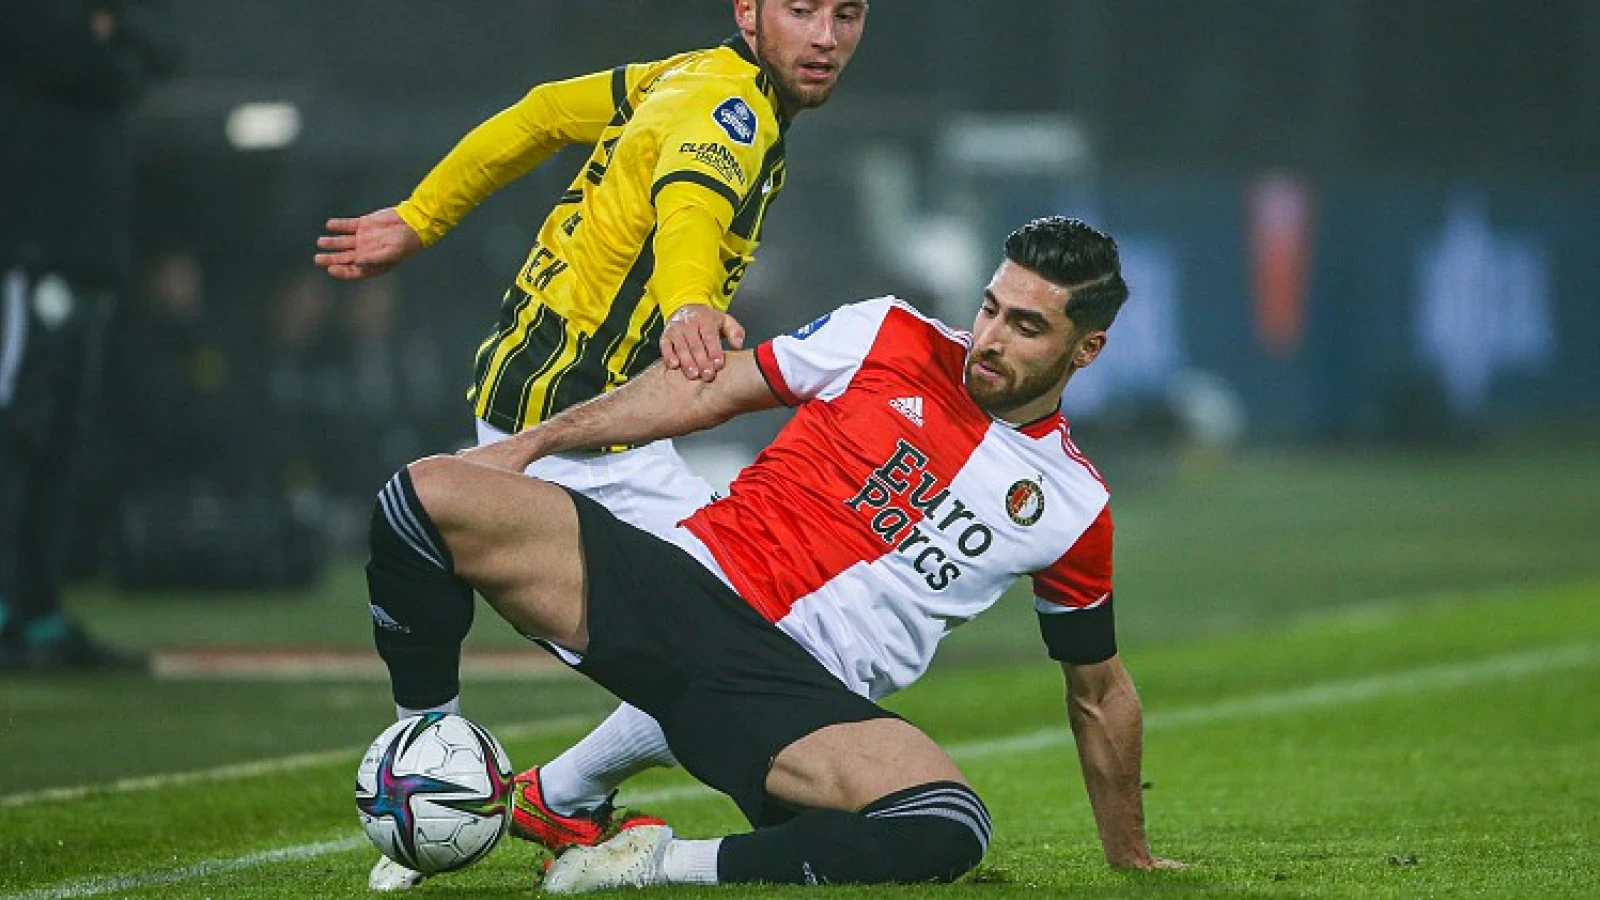 De kranten: 'Droogte Jahanbakhsh groot probleem voor Feyenoord'